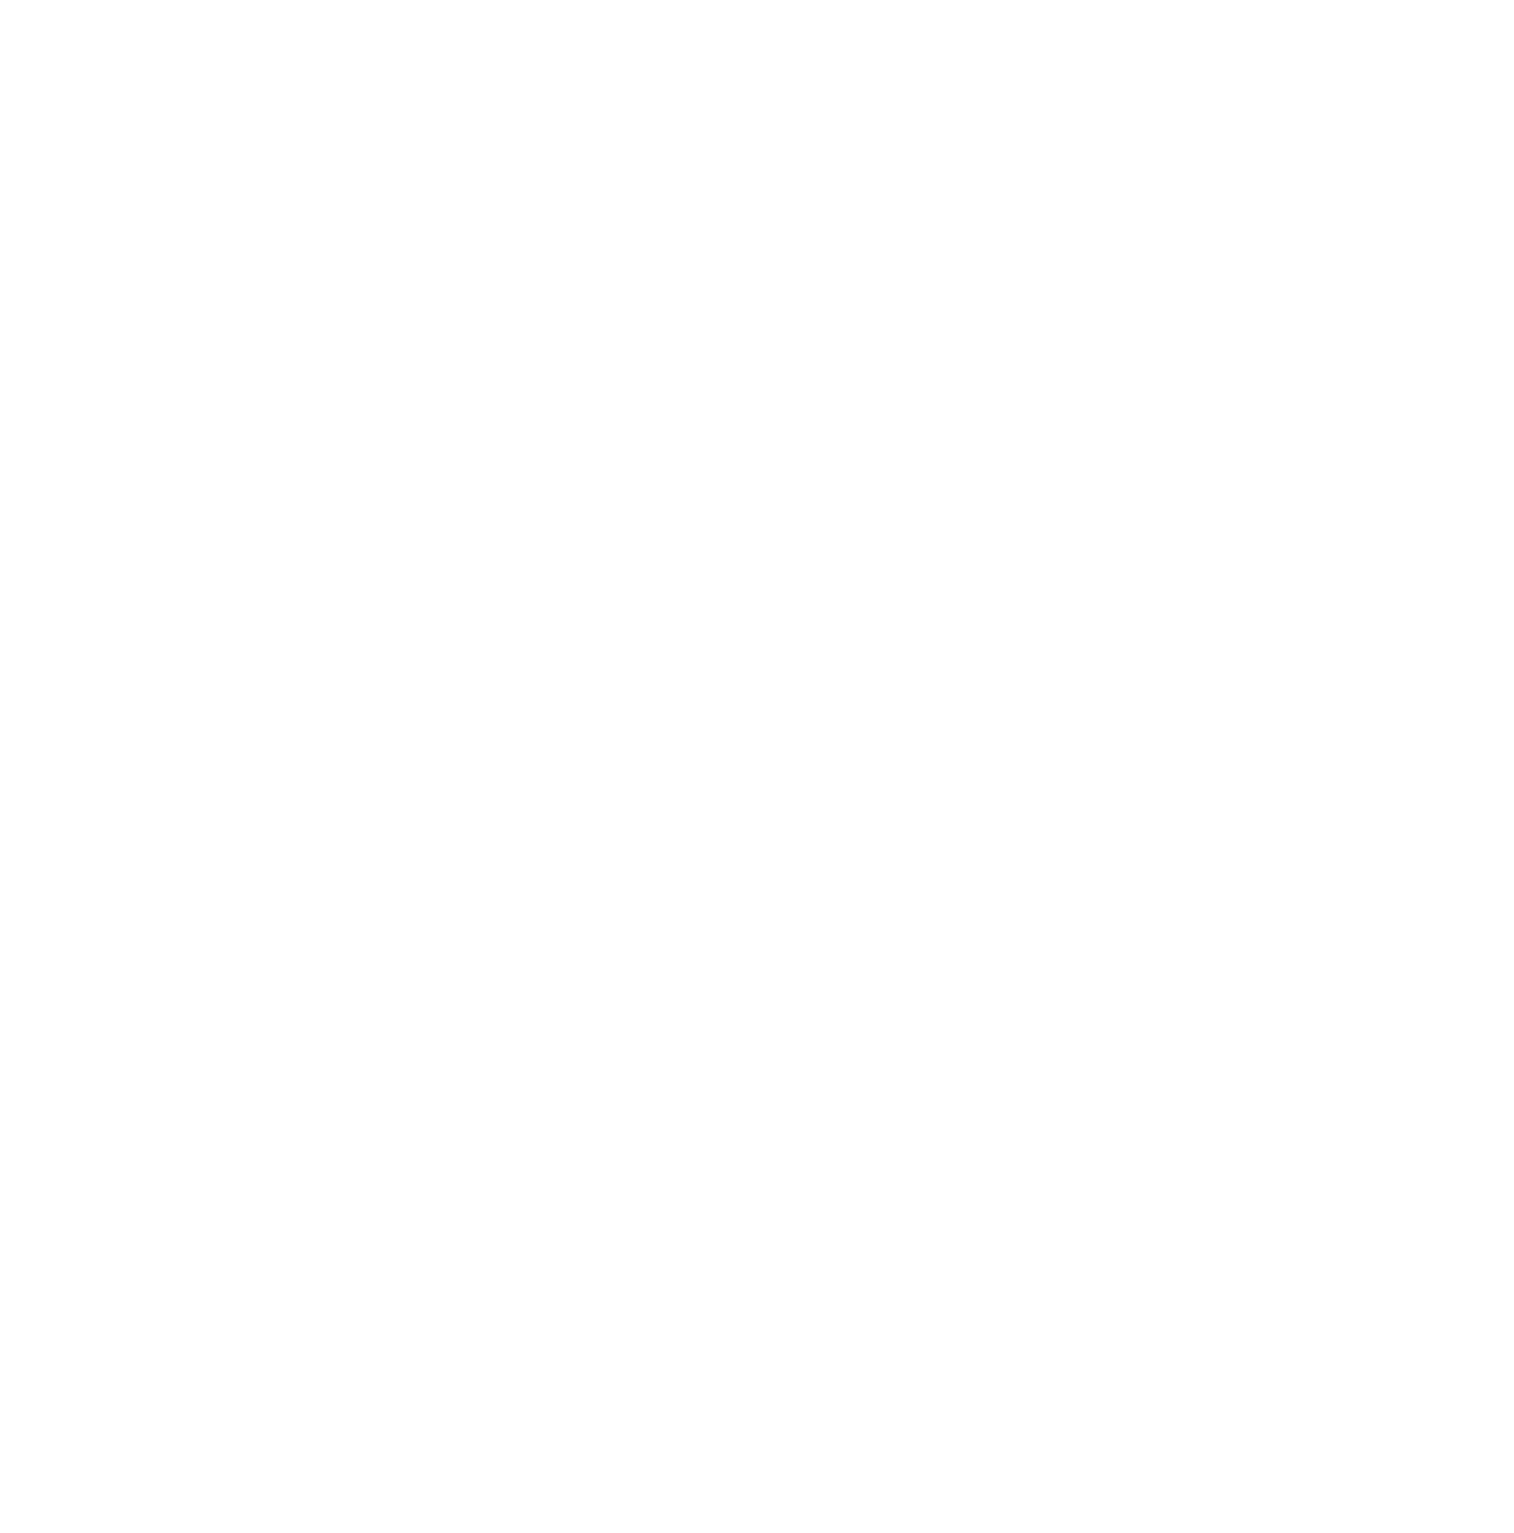 Endeavour Group logo pour fonds sombres (PNG transparent)